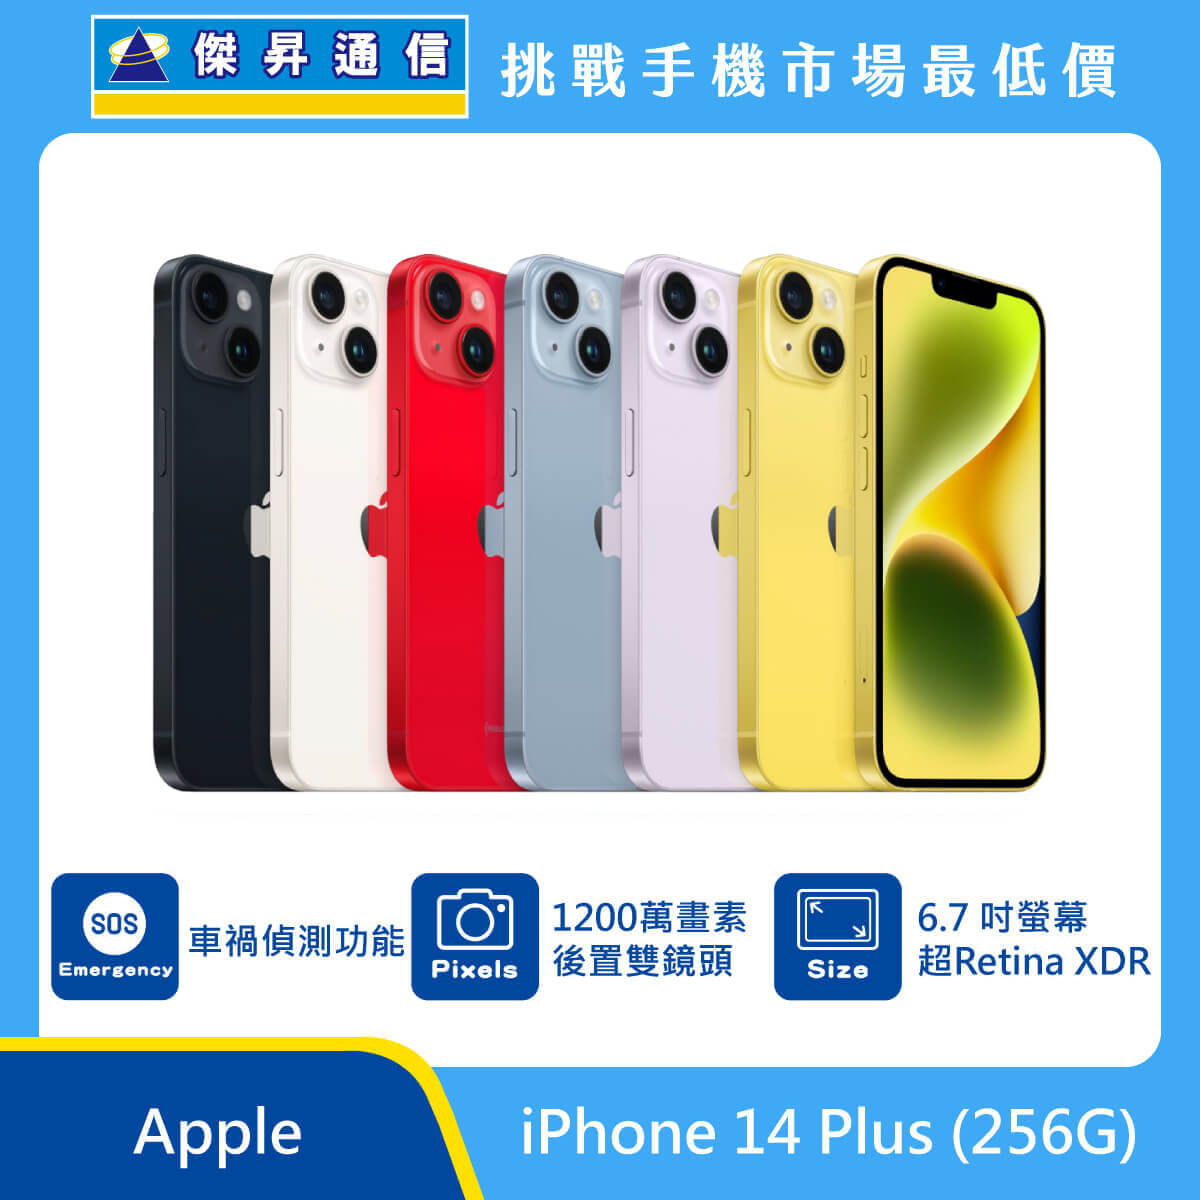 Apple iPhone 14 Plus (256G)